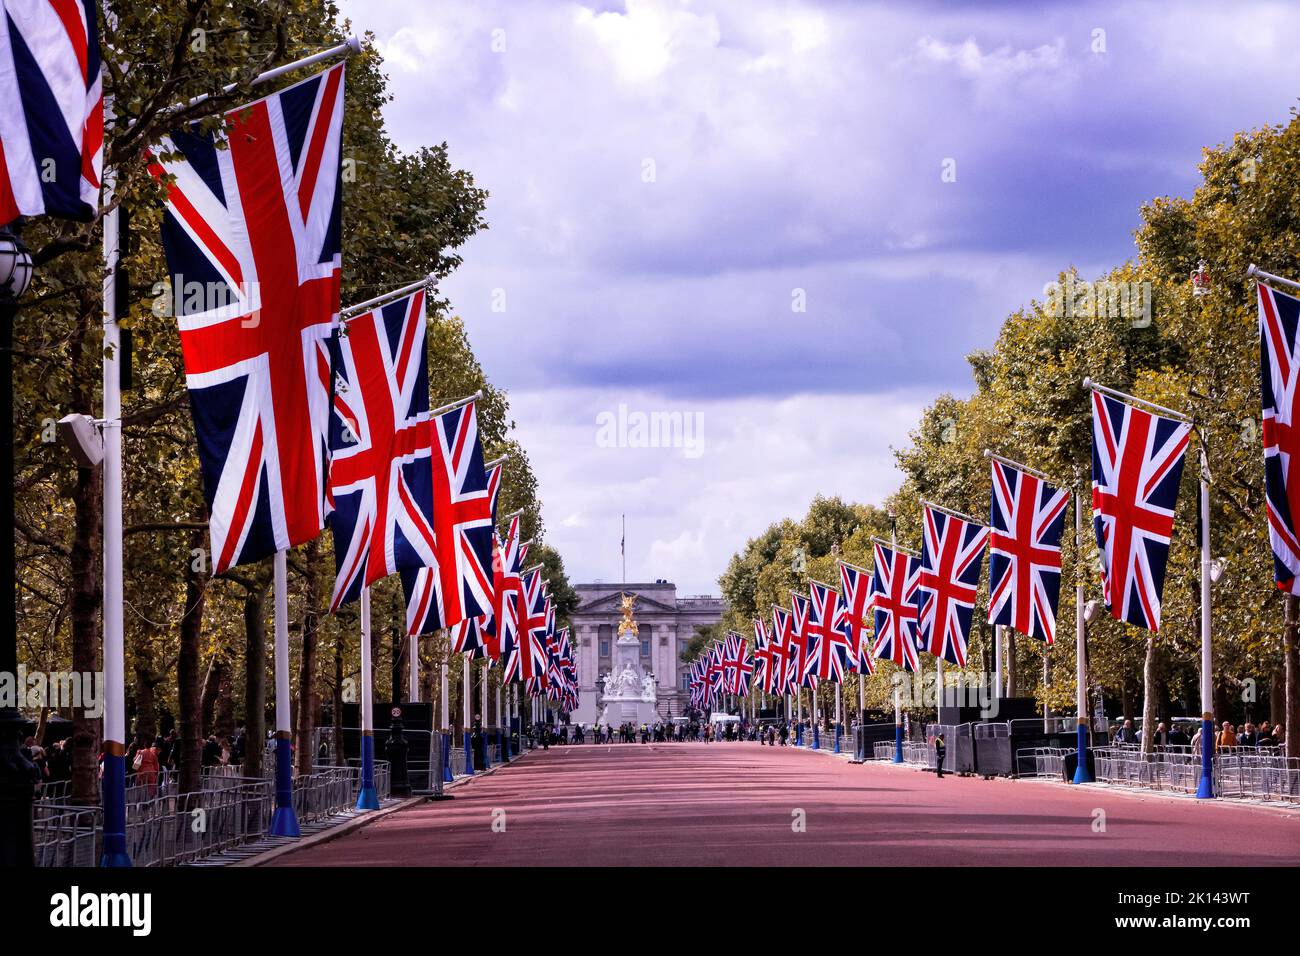 Die Mall London, in der die Menschen ihrer Königlichen Hoheit Queen Elizabeth II Respekt zollen.Lambeth Bridge London Großbritannien Stockfoto